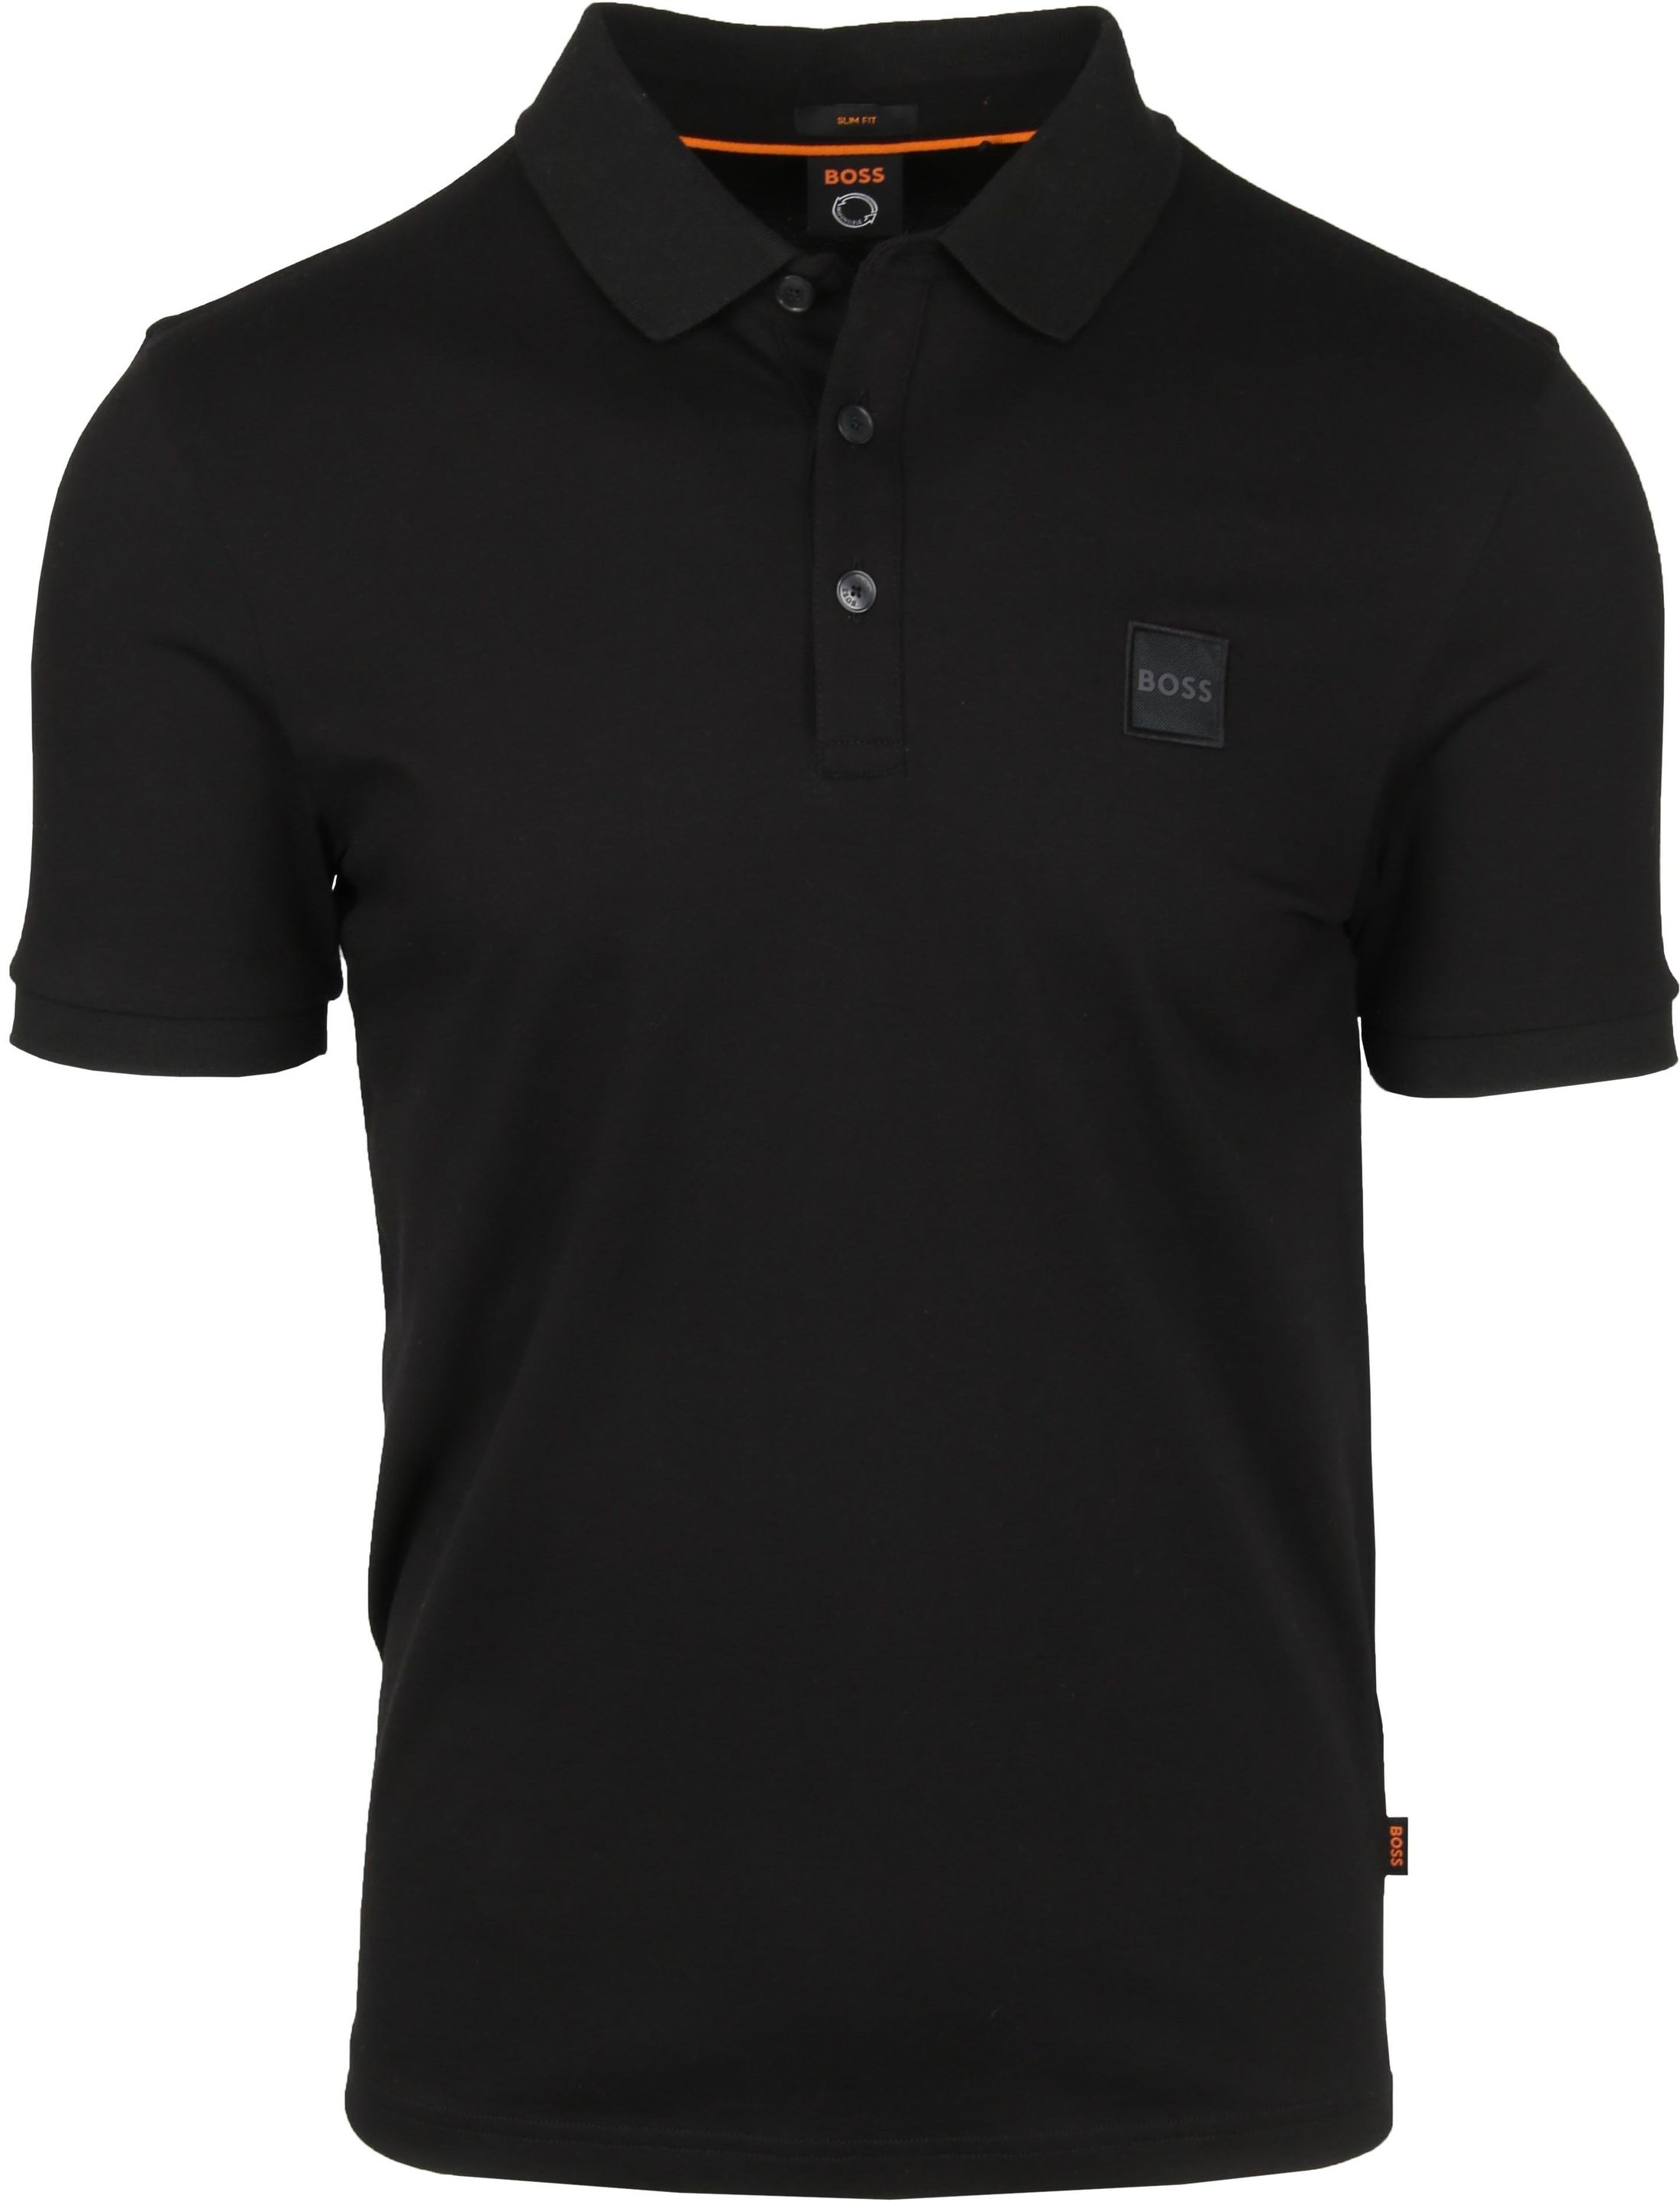 Hugo Boss Passenger Polo Shirt Black size S